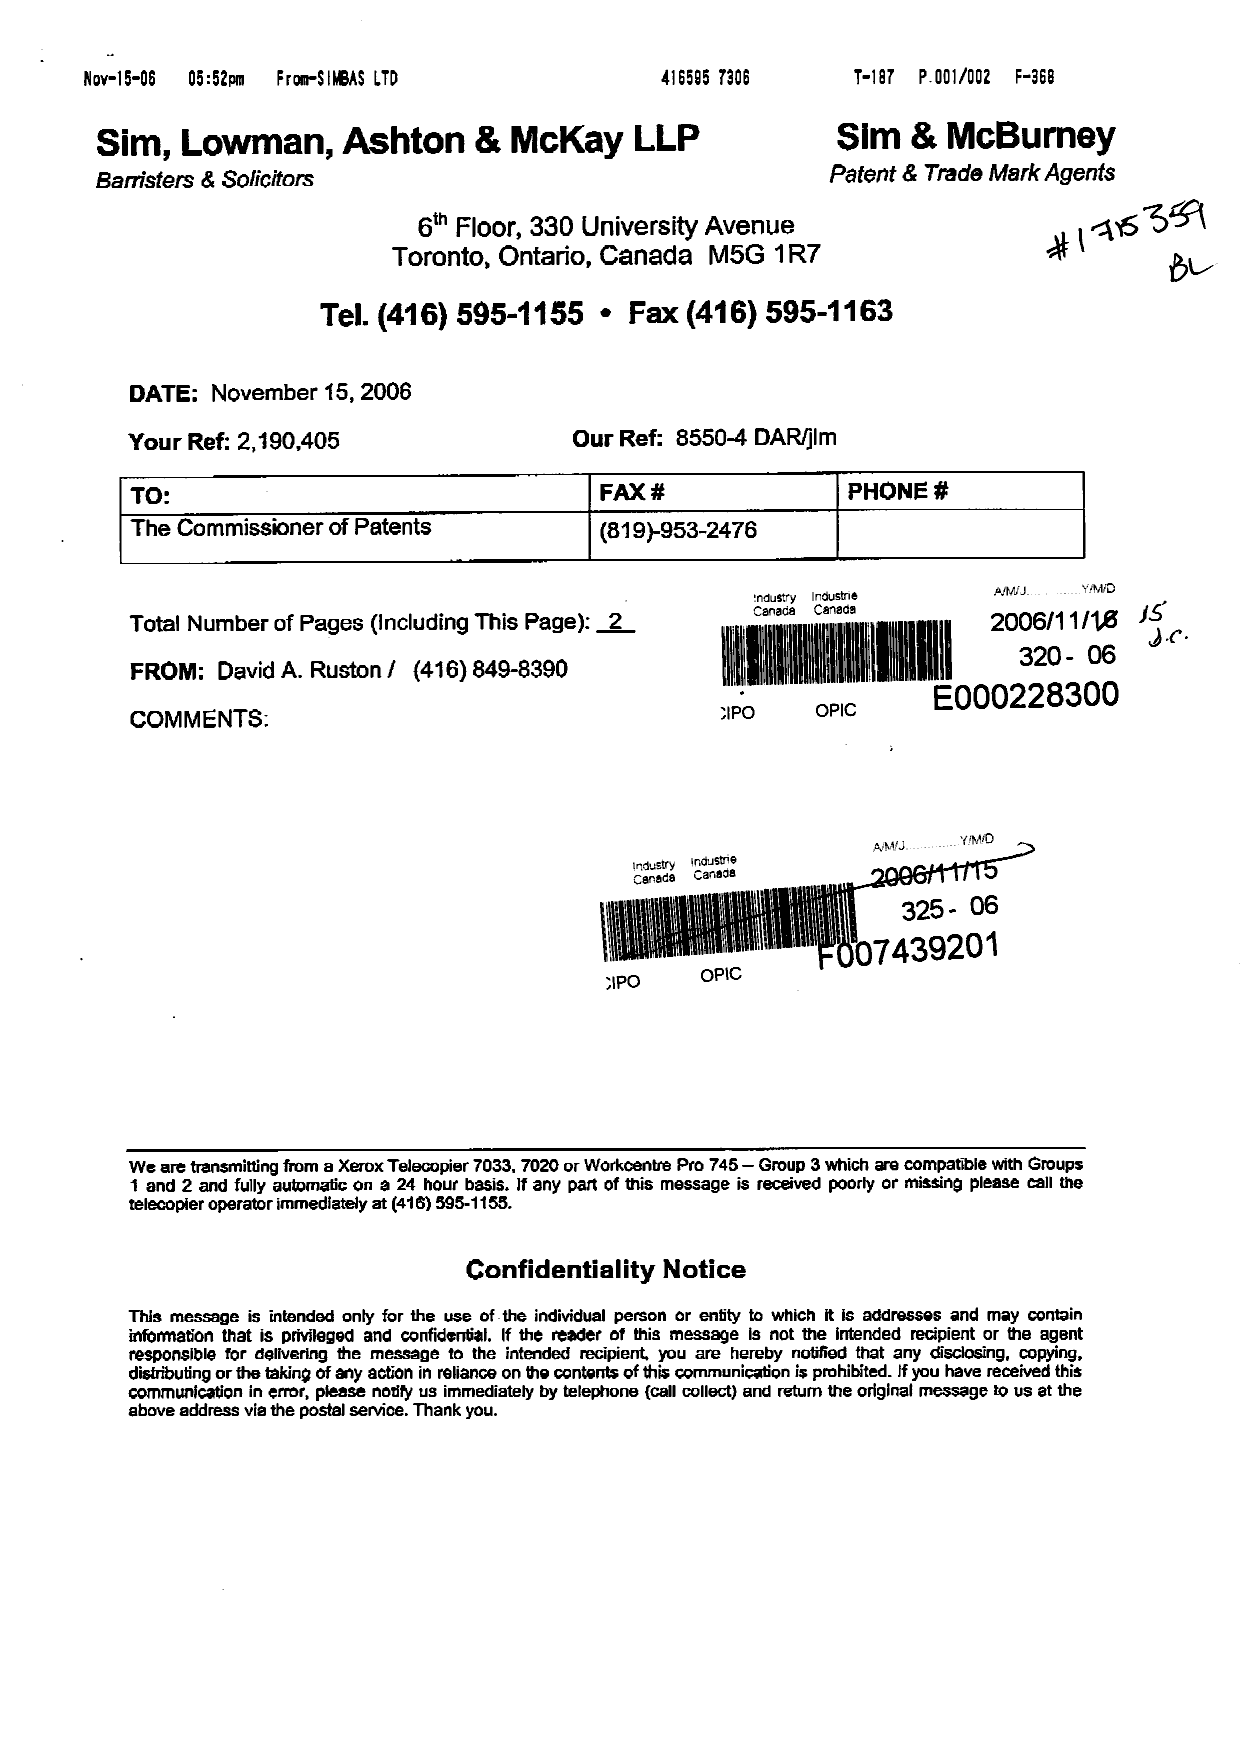 Document de brevet canadien 2190405. Taxes 20061115. Image 2 de 2